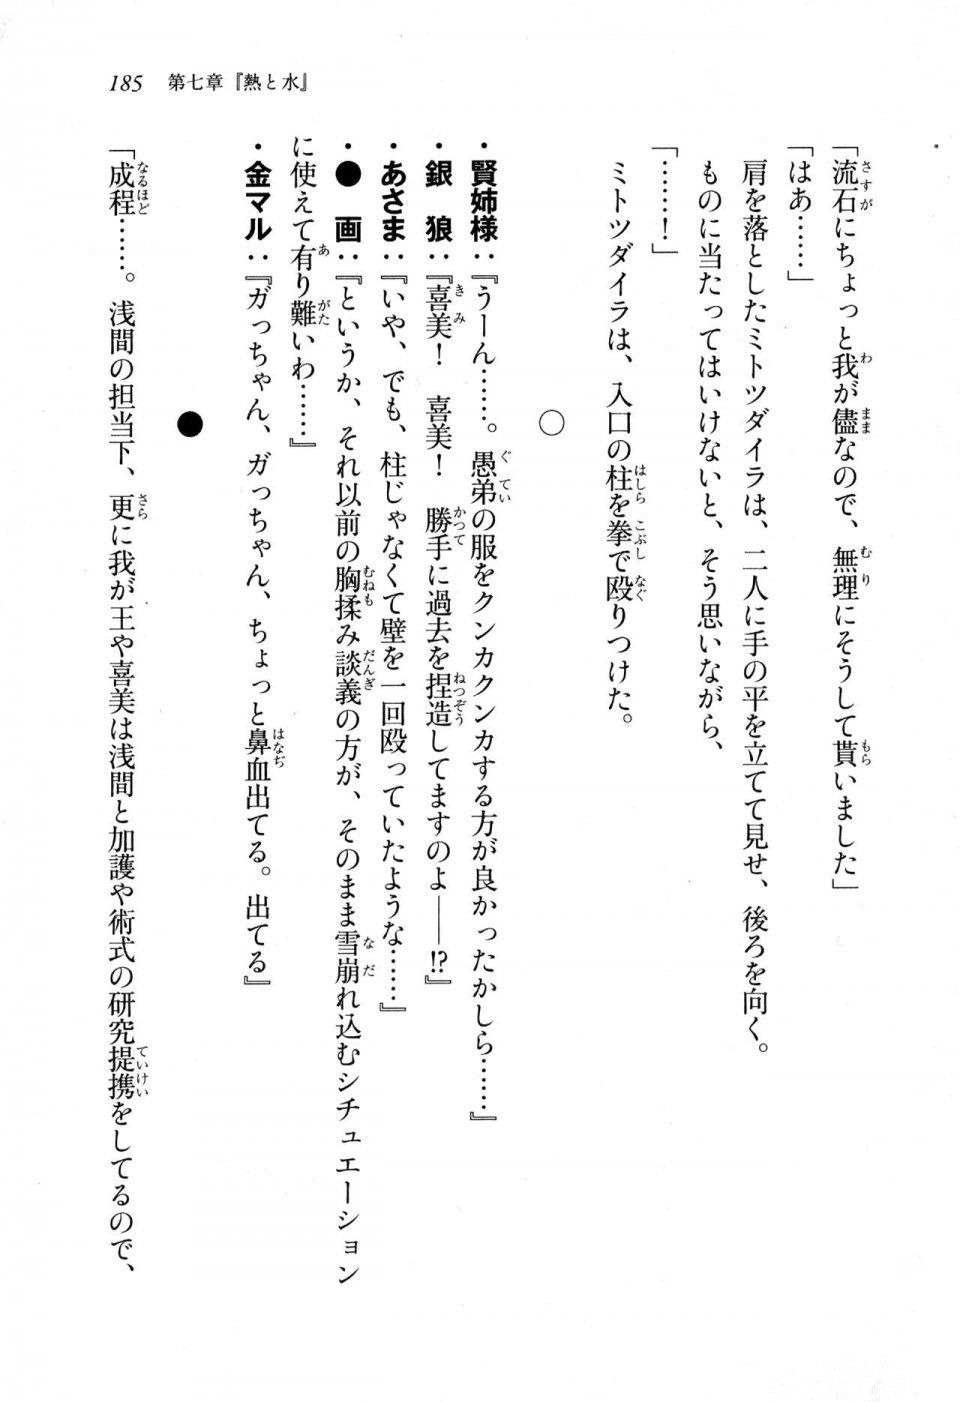 Kyoukai Senjou no Horizon LN Sidestory Vol 1 - Photo #183